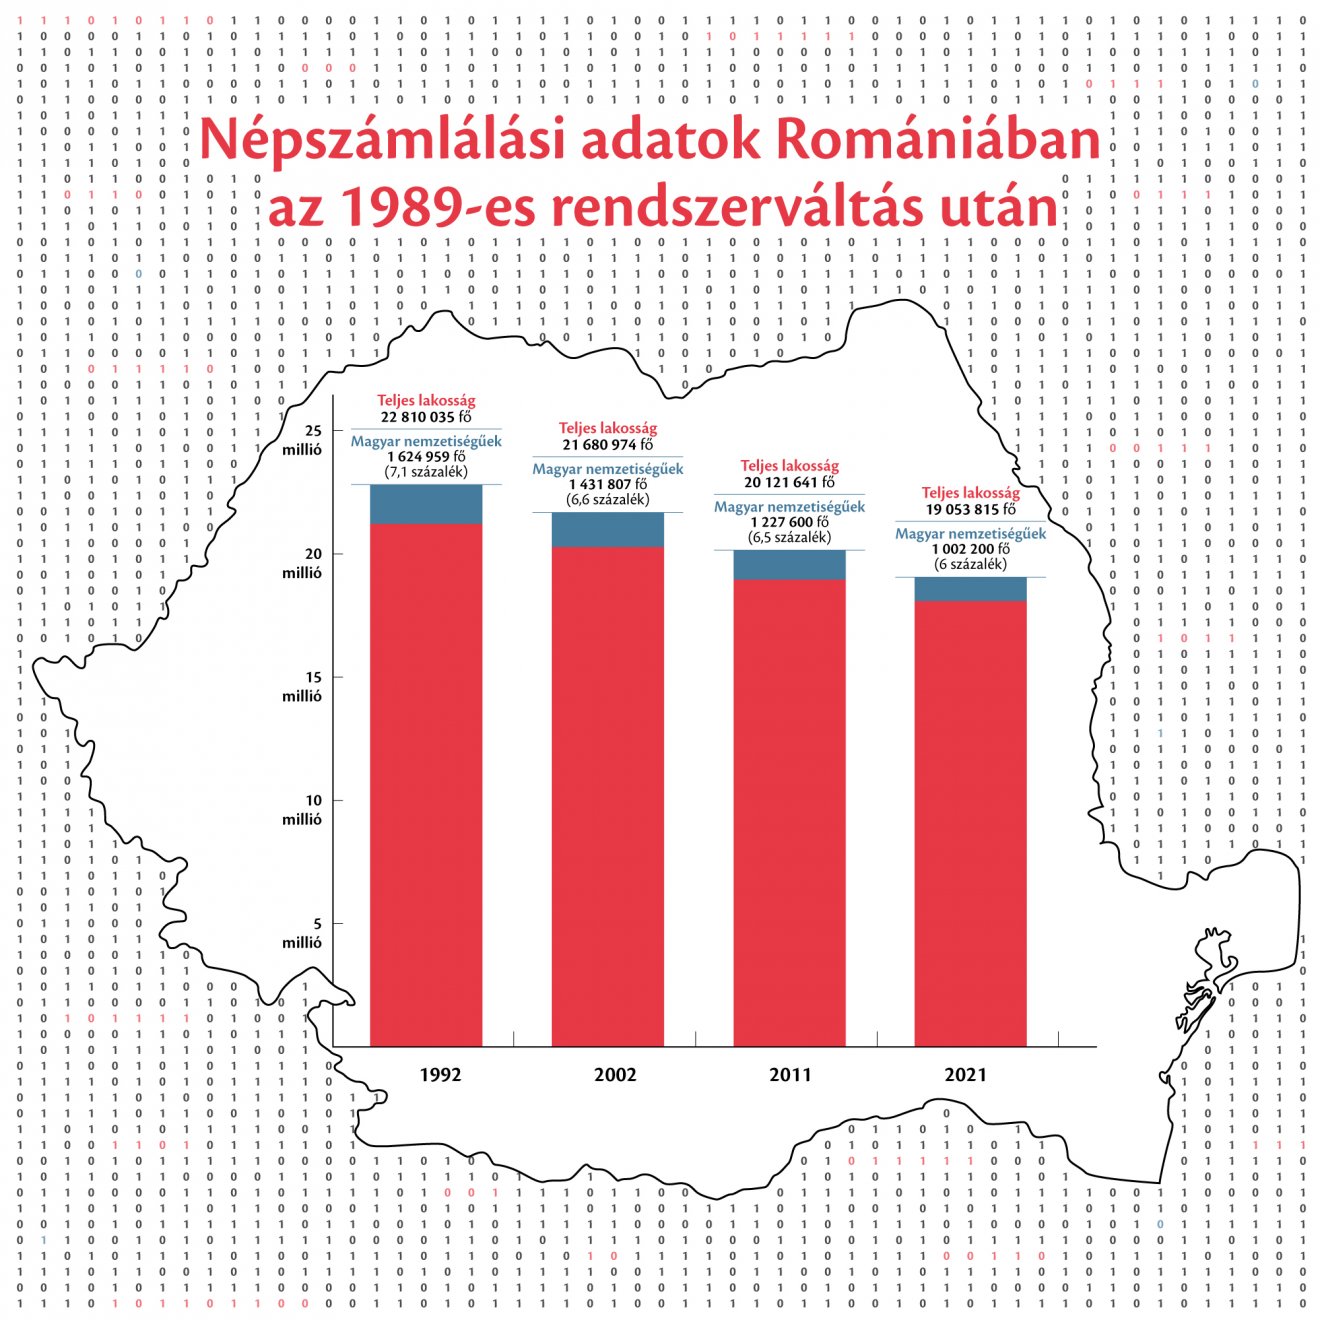 Akár 1 millió 150 ezer magyarunk is lehet – Szociológus a népszámlálási adatok mögötti valóságról